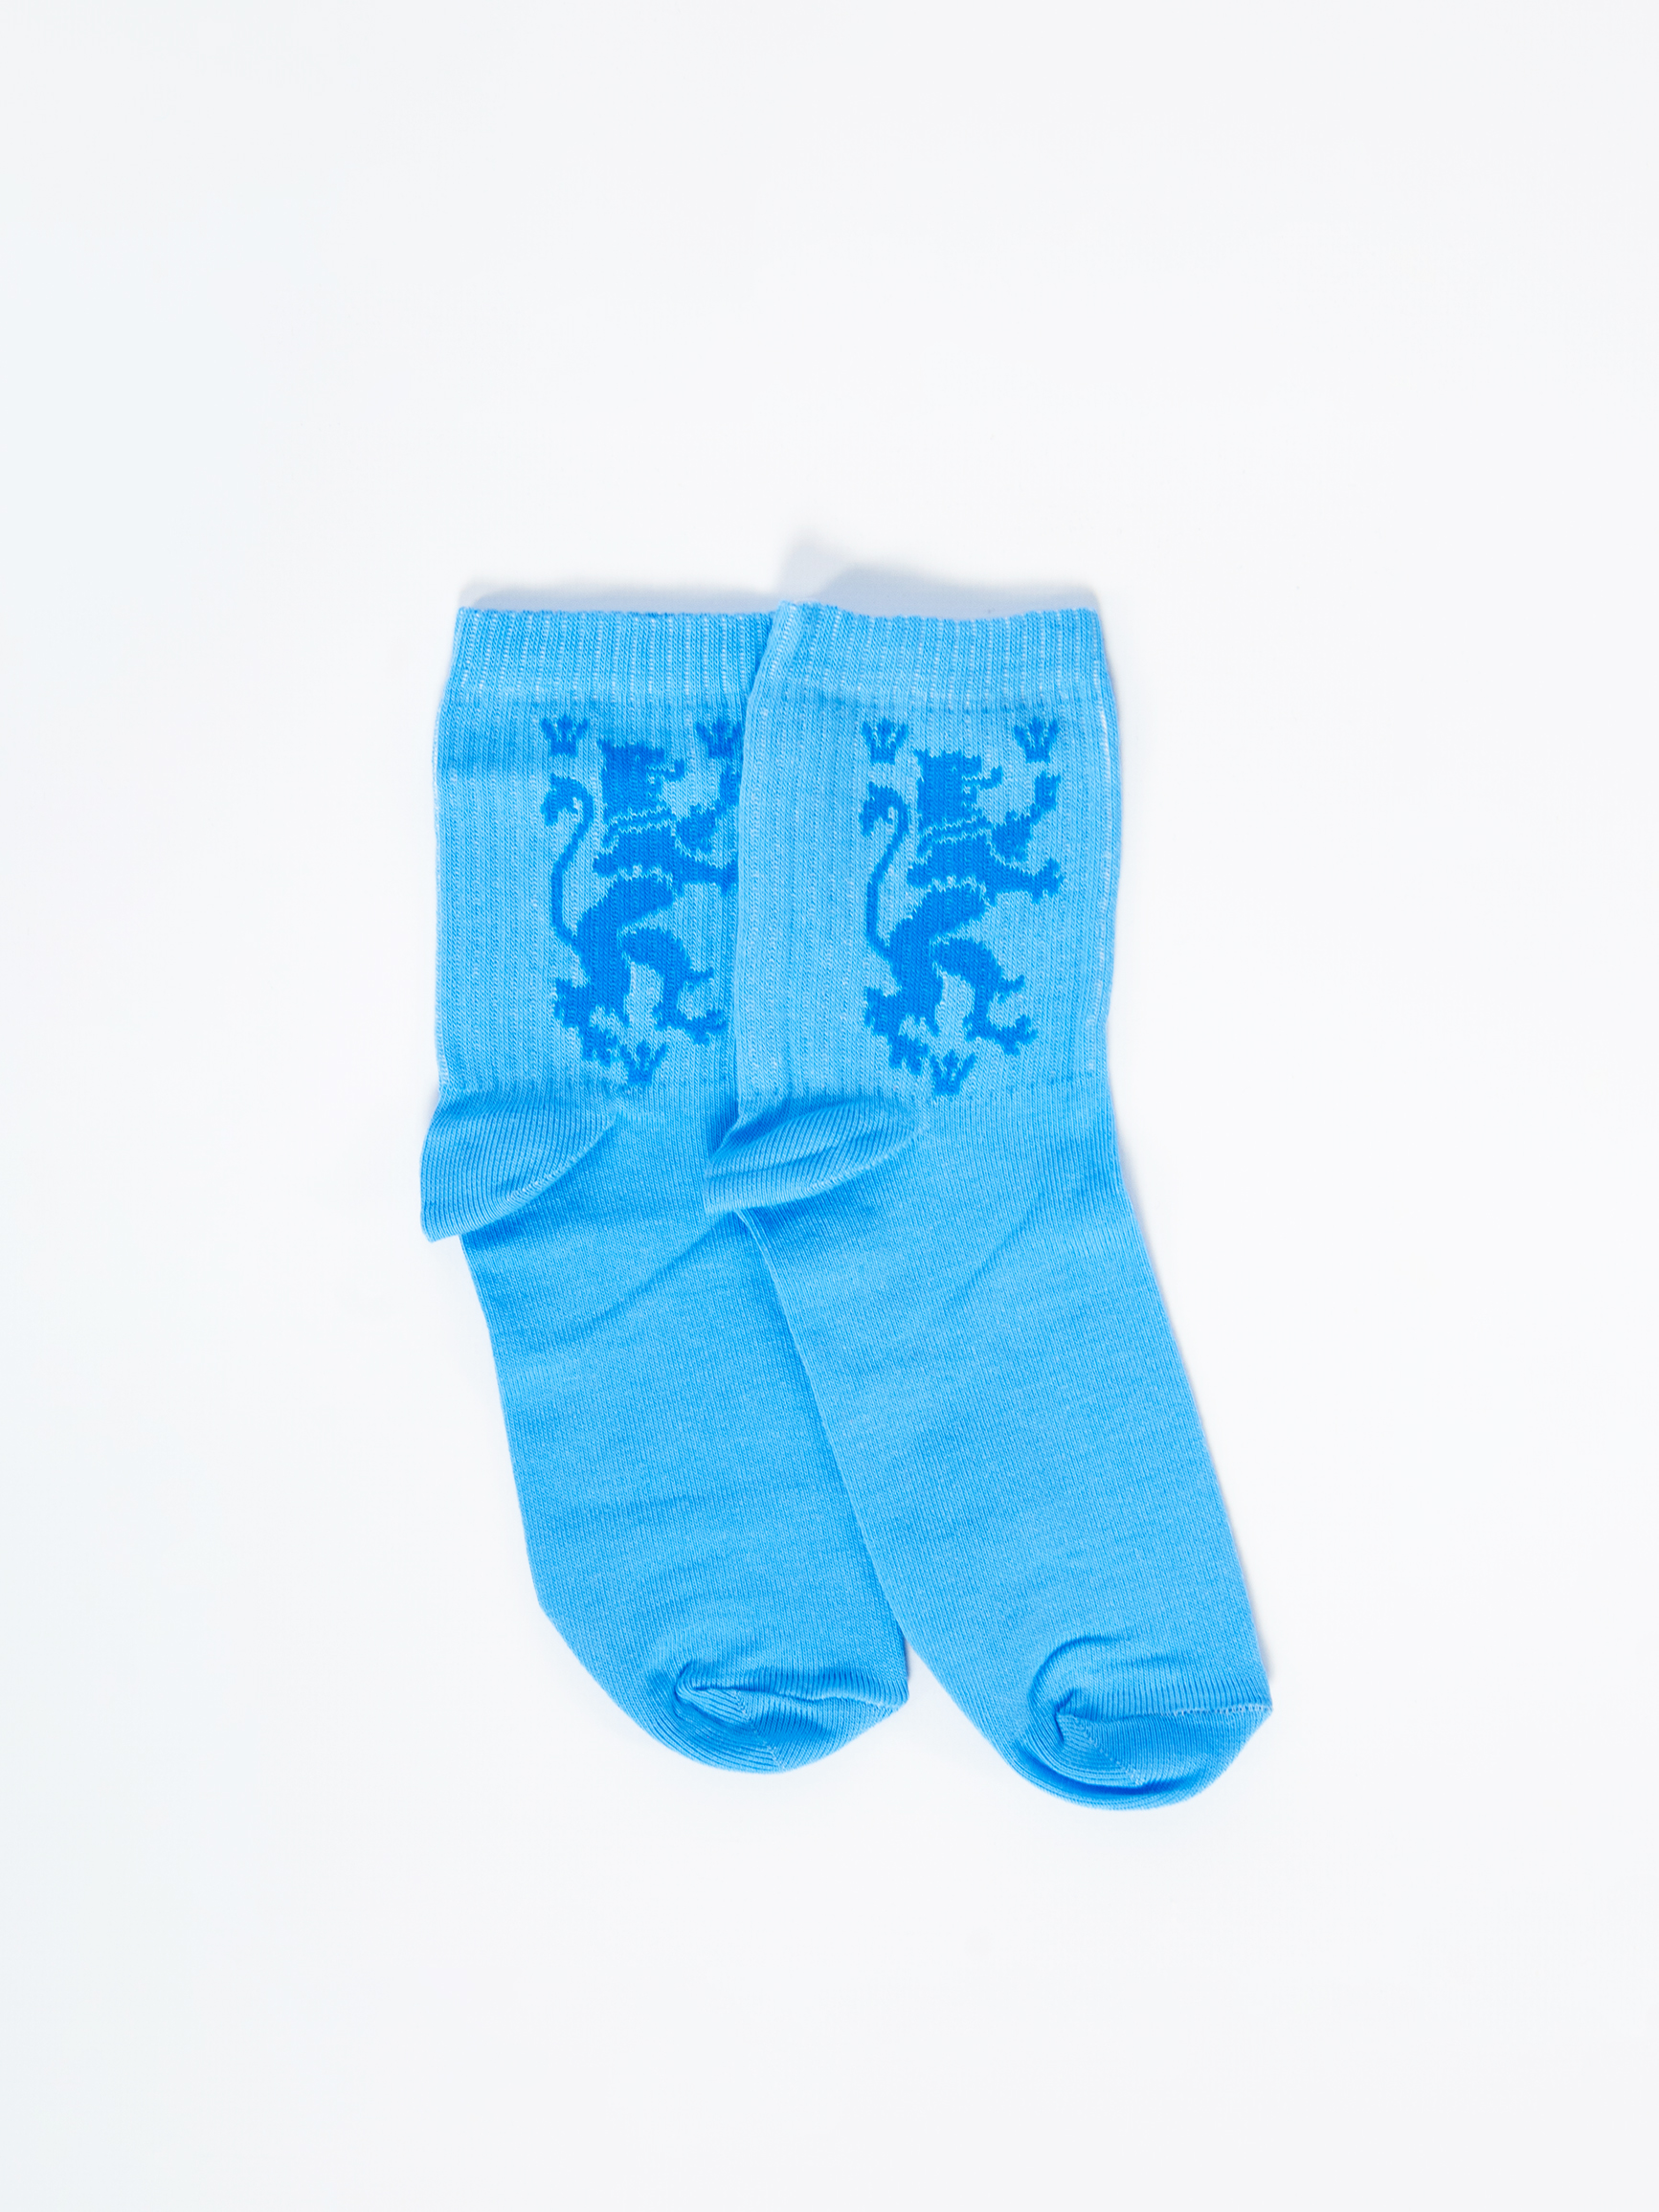 Socks Lion. Color sky blue. 2.